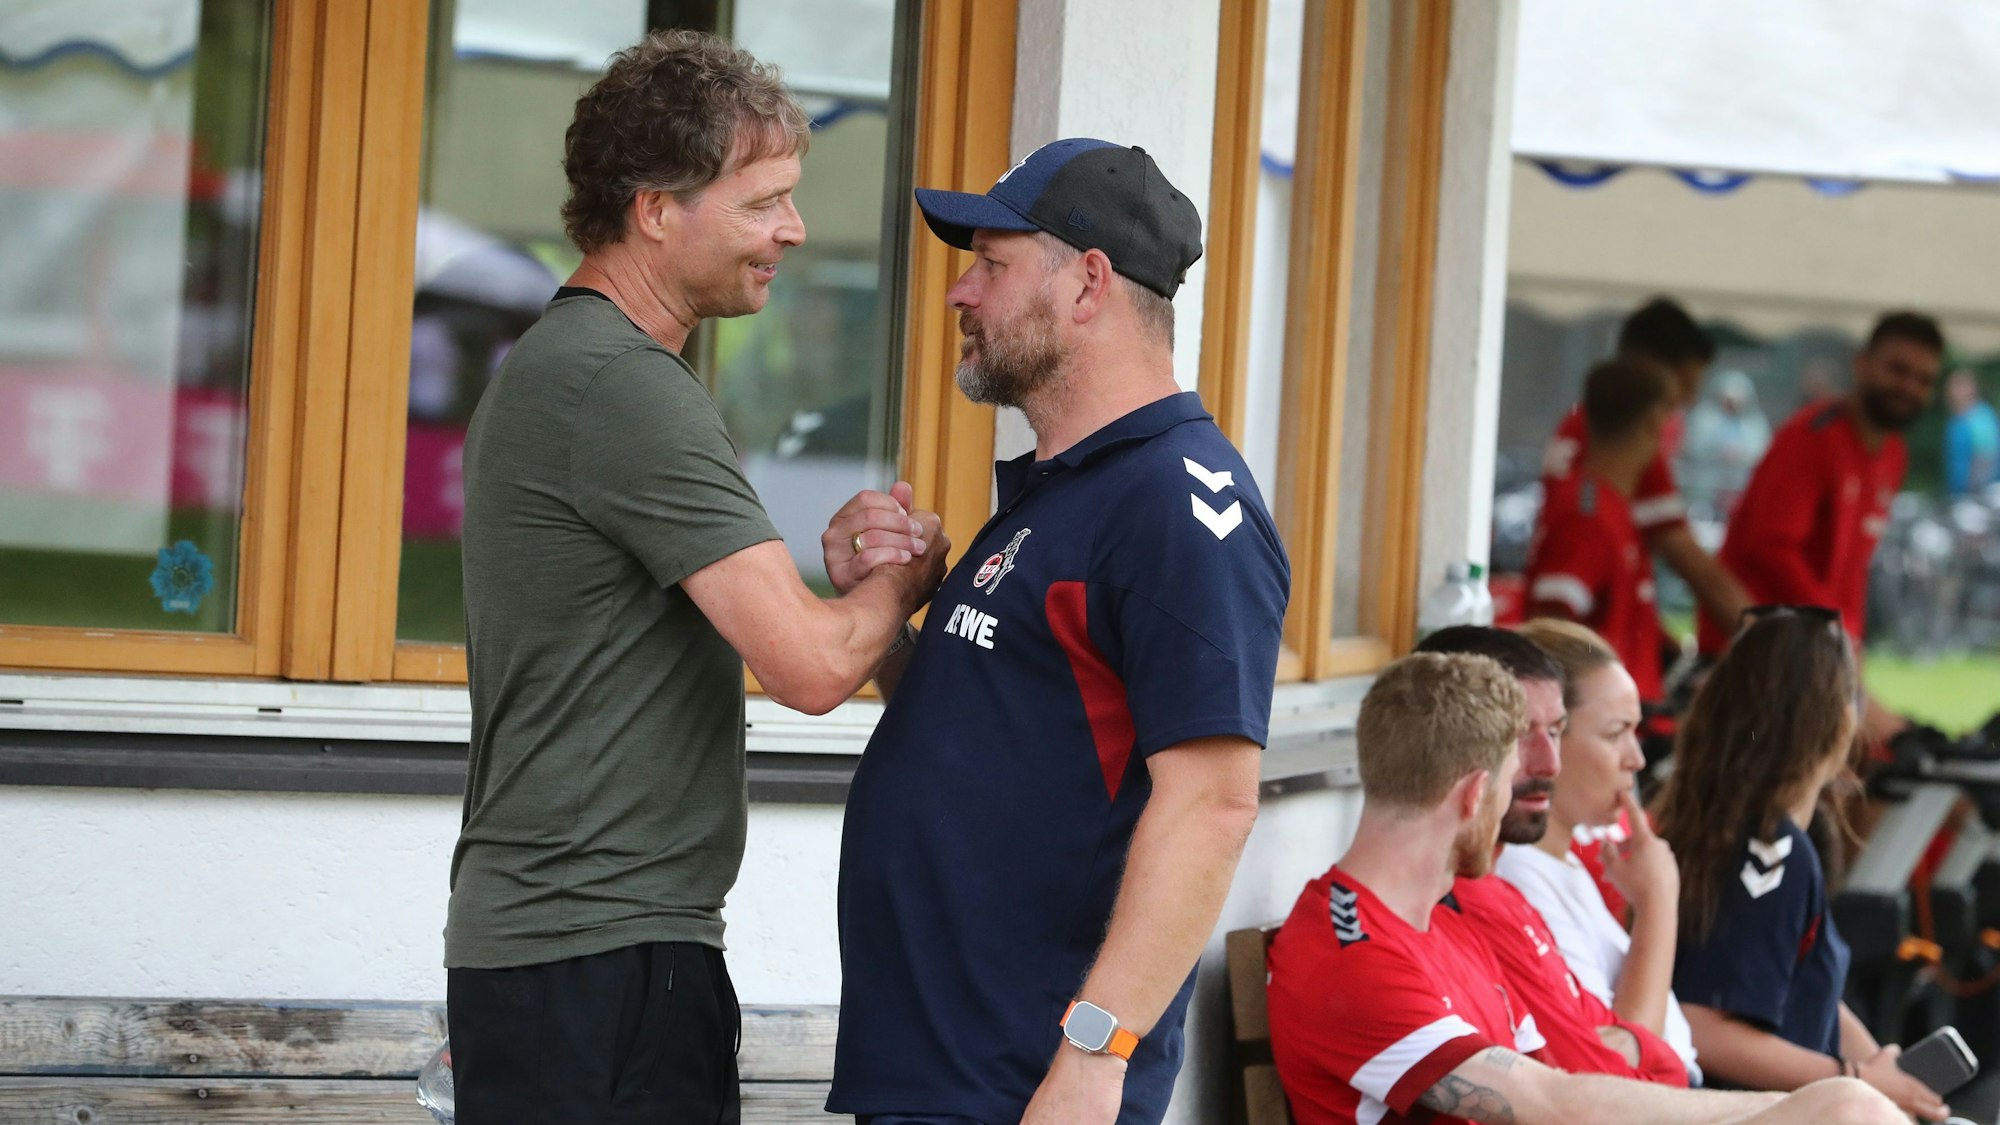 FC-Trainingslager in Maria: FC-Coach Steffen Baumgart im Gespräch mit Marcus Sorg vom DFB.








